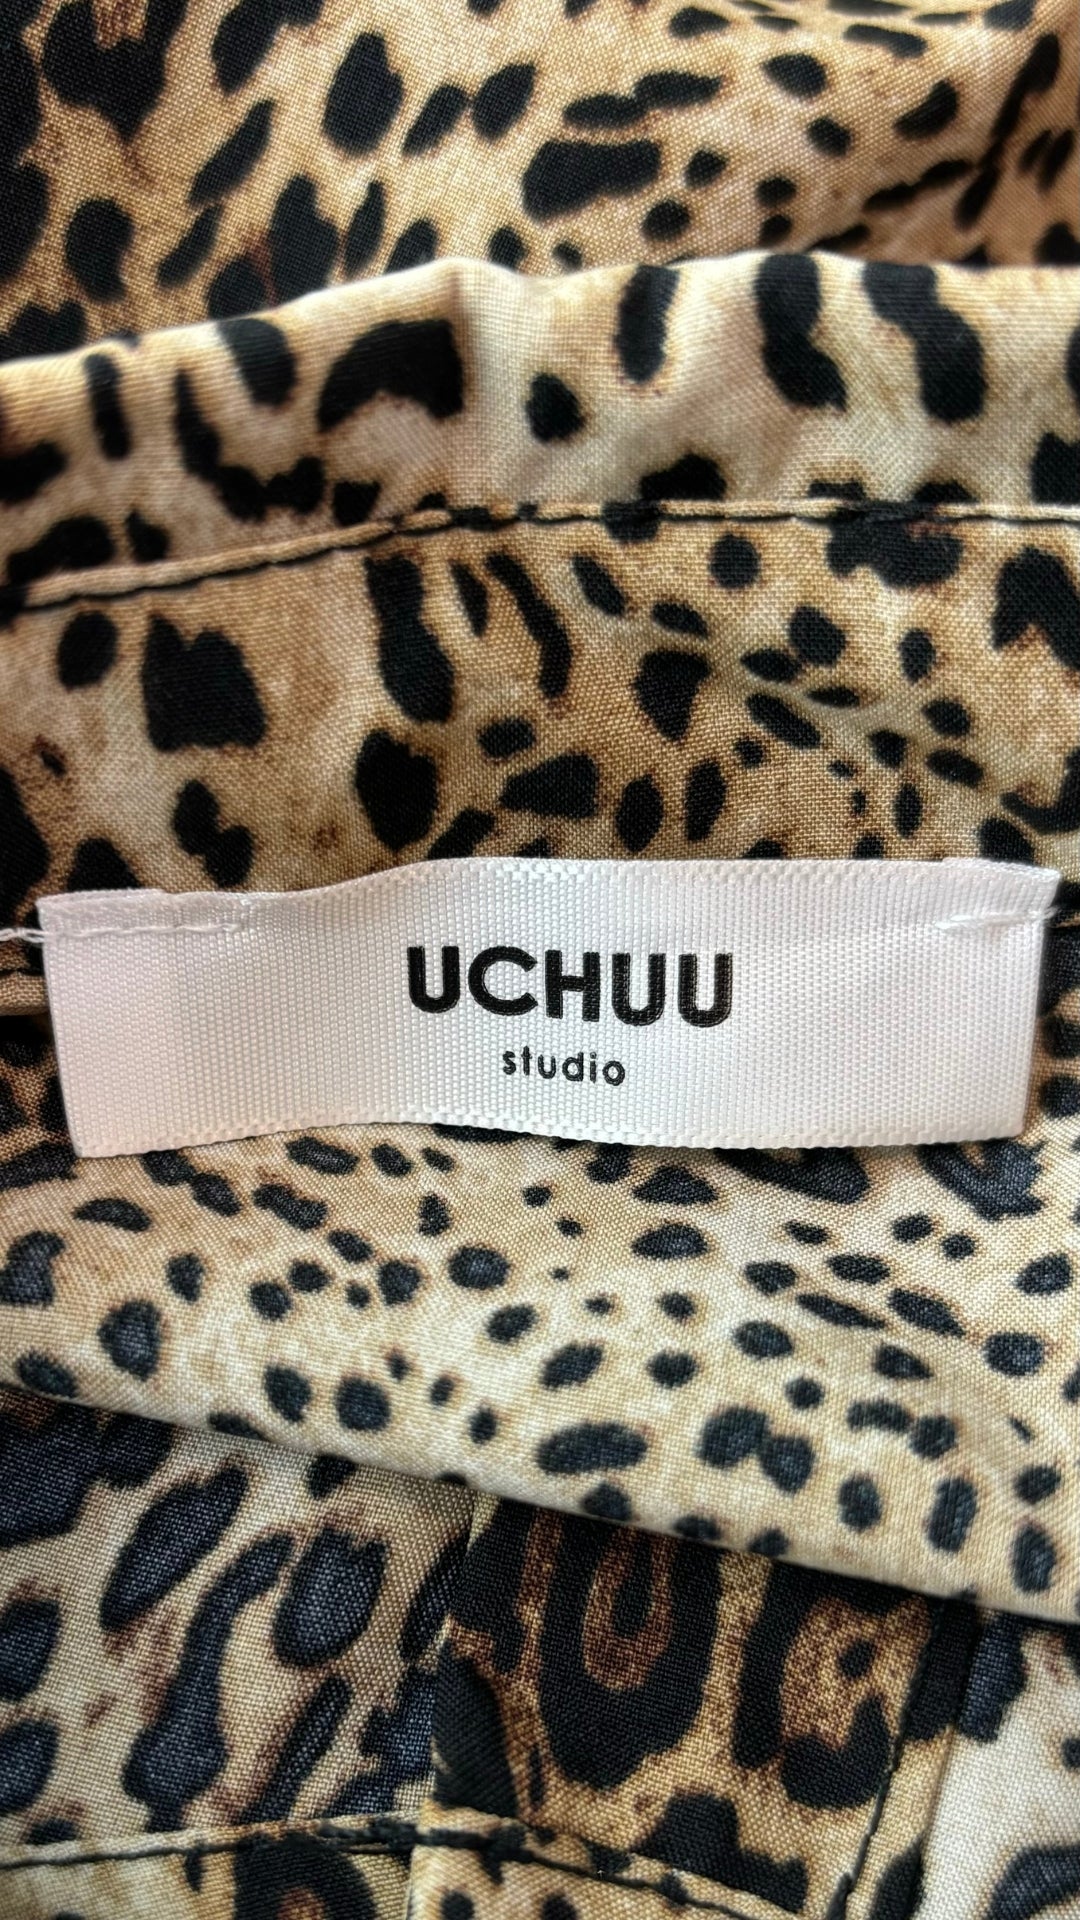 Chemisier fluide léopard ourlet en dentelle Uchuu Studio, taille m/l. Vue de l'étiquette de marque.